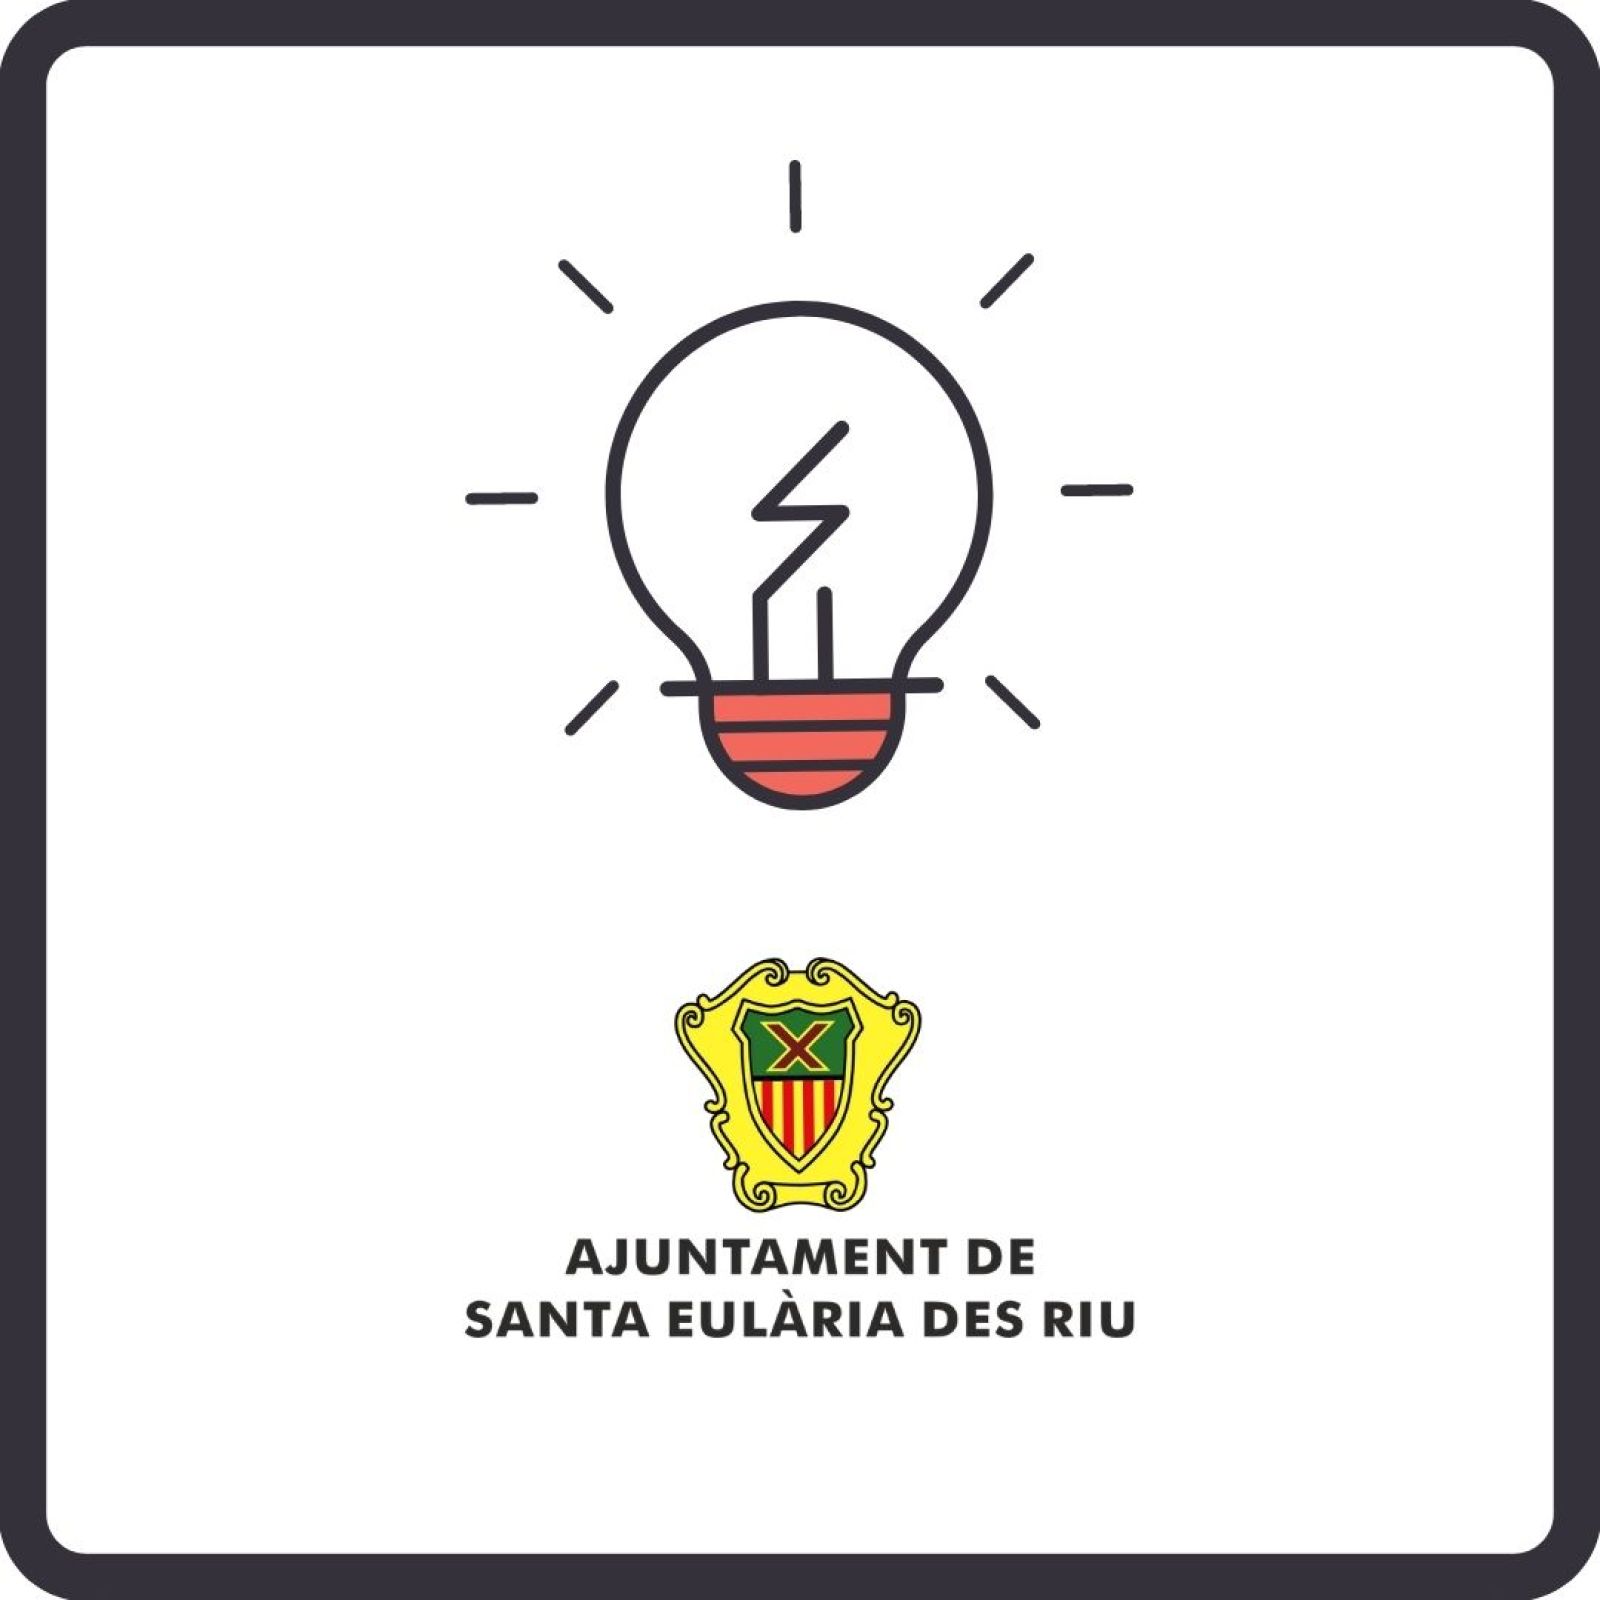 Corte temporal del suministro de energía eléctrica en diferentes zonas de Santa Eulària des Riu los días 27 y 28 de abril.